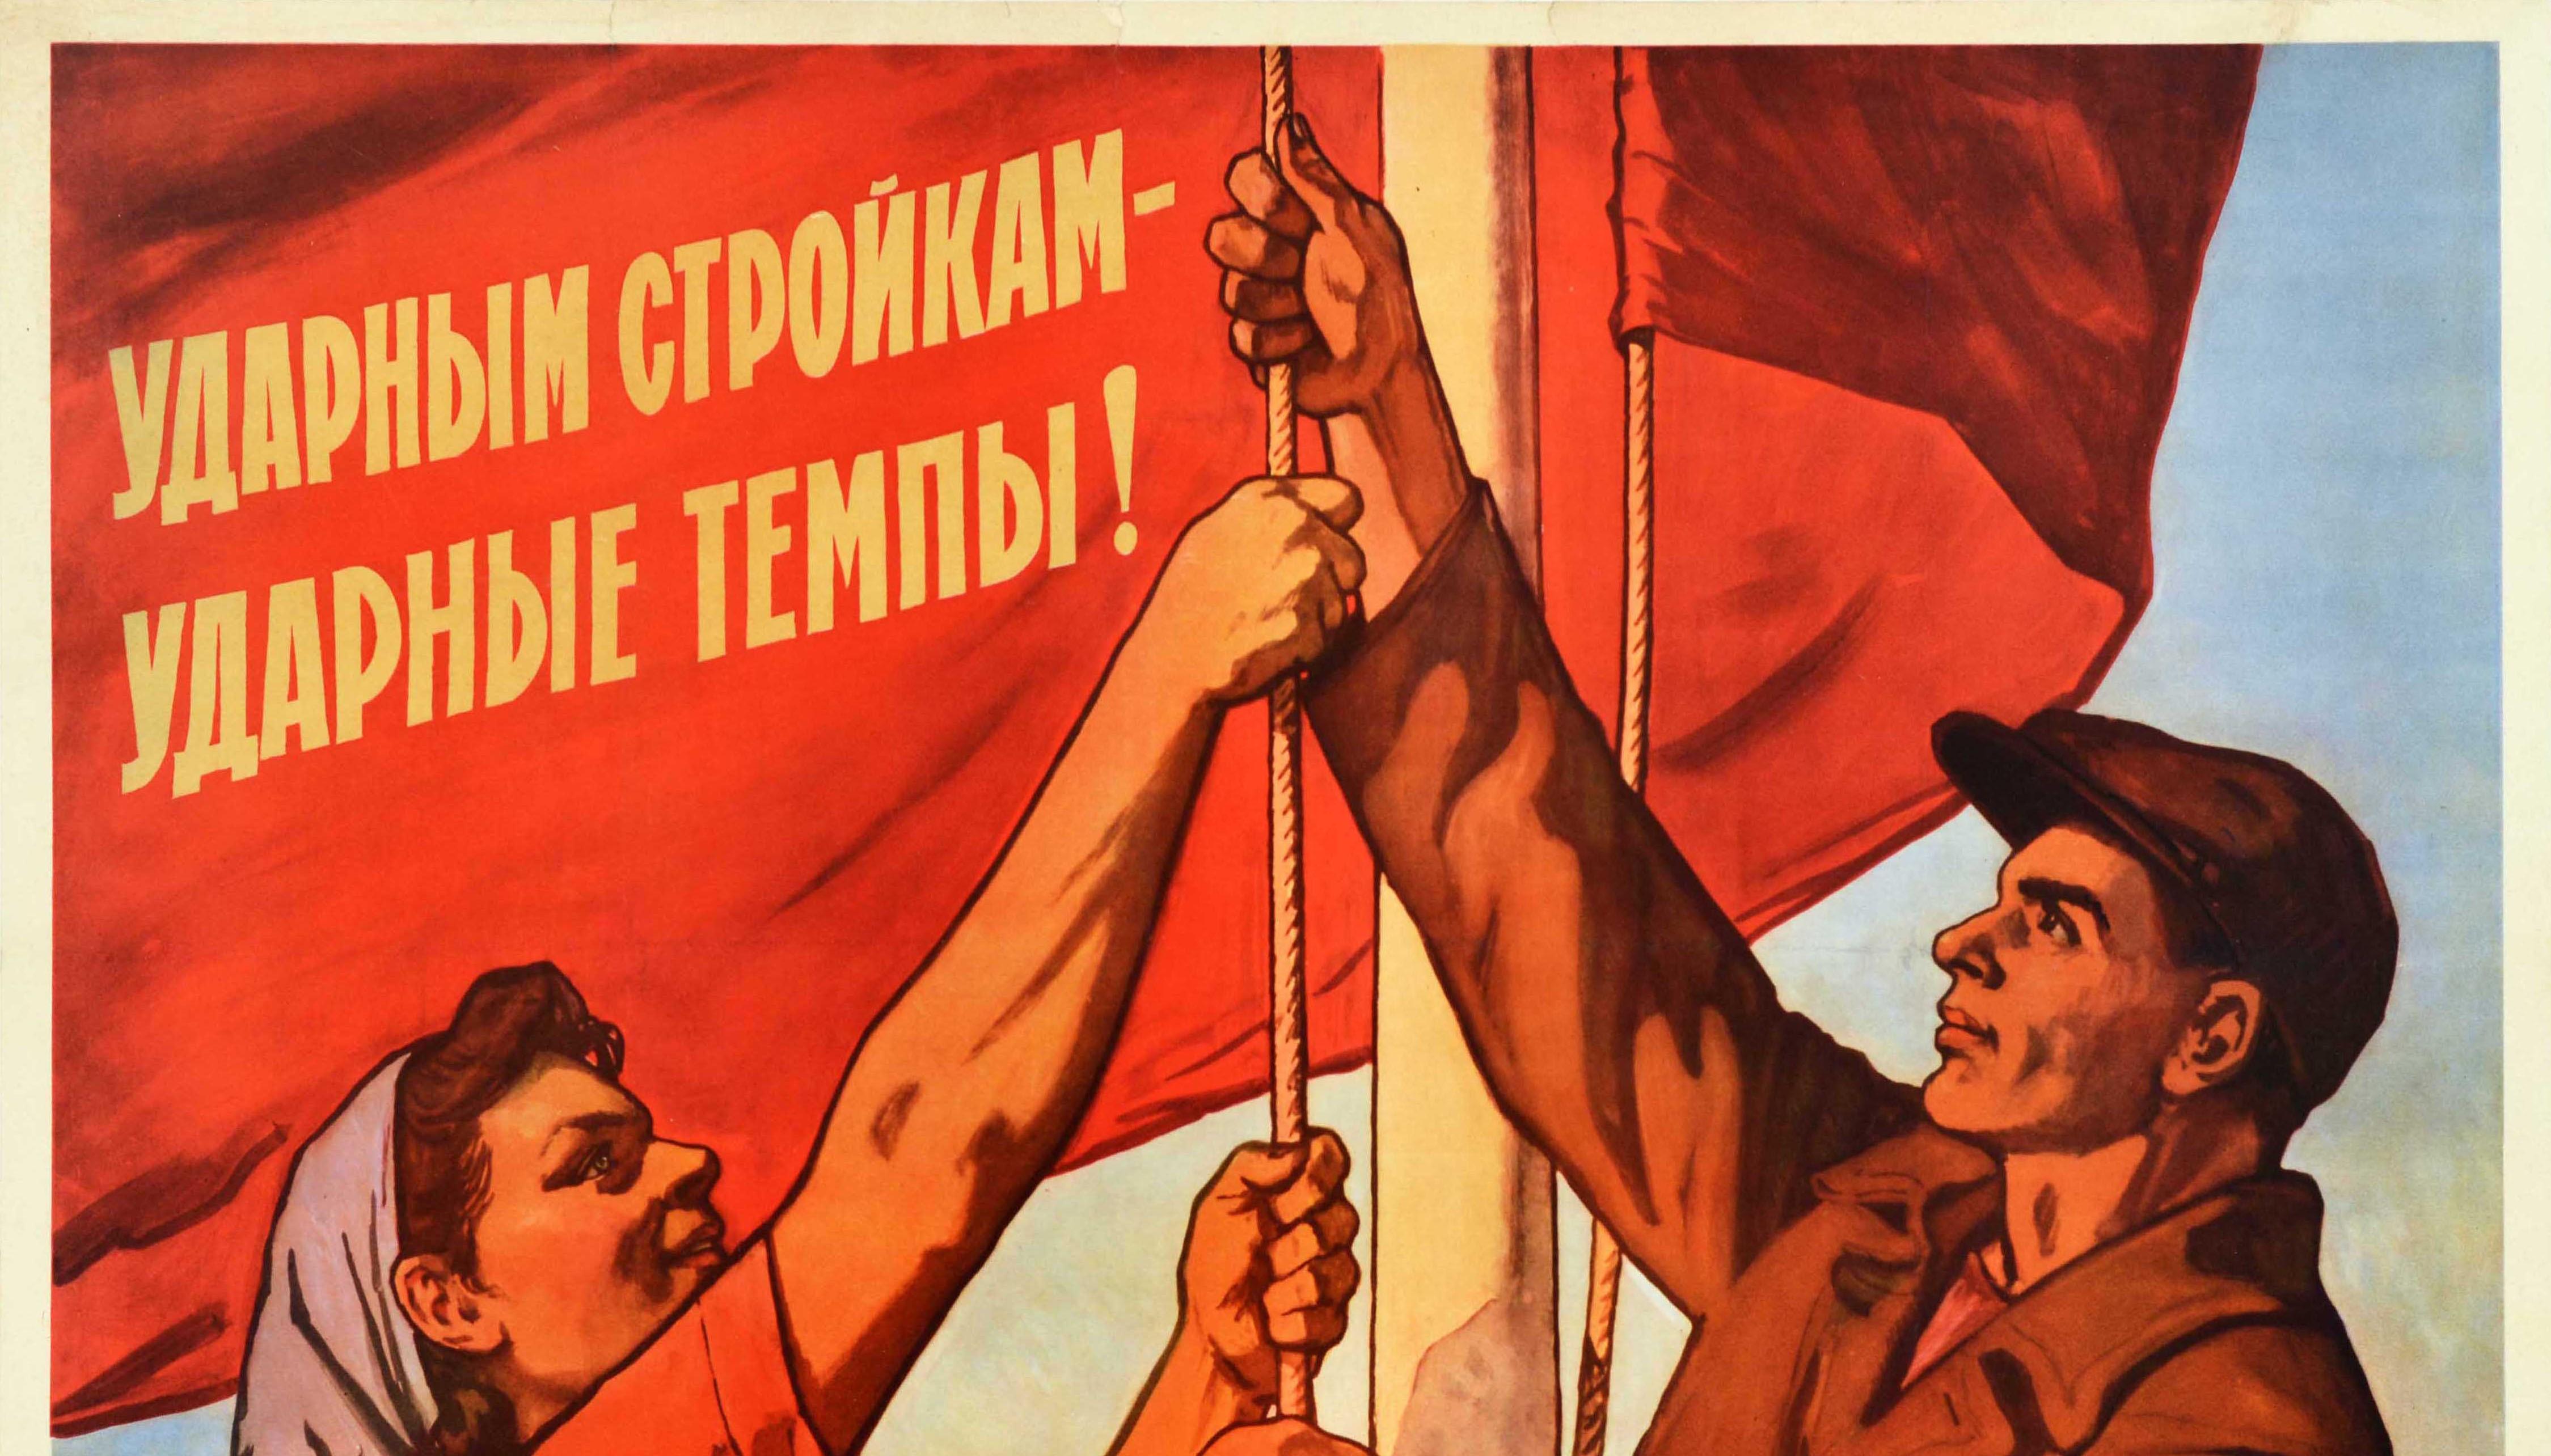 Affiche de propagande soviétique originale et vintage - Des projets de construction chocs Des taux chocs ! Image dynamique de deux travailleurs qui lèvent un drapeau rouge en forme de bannière sur lequel figure le texte en caractères jaunes gras.